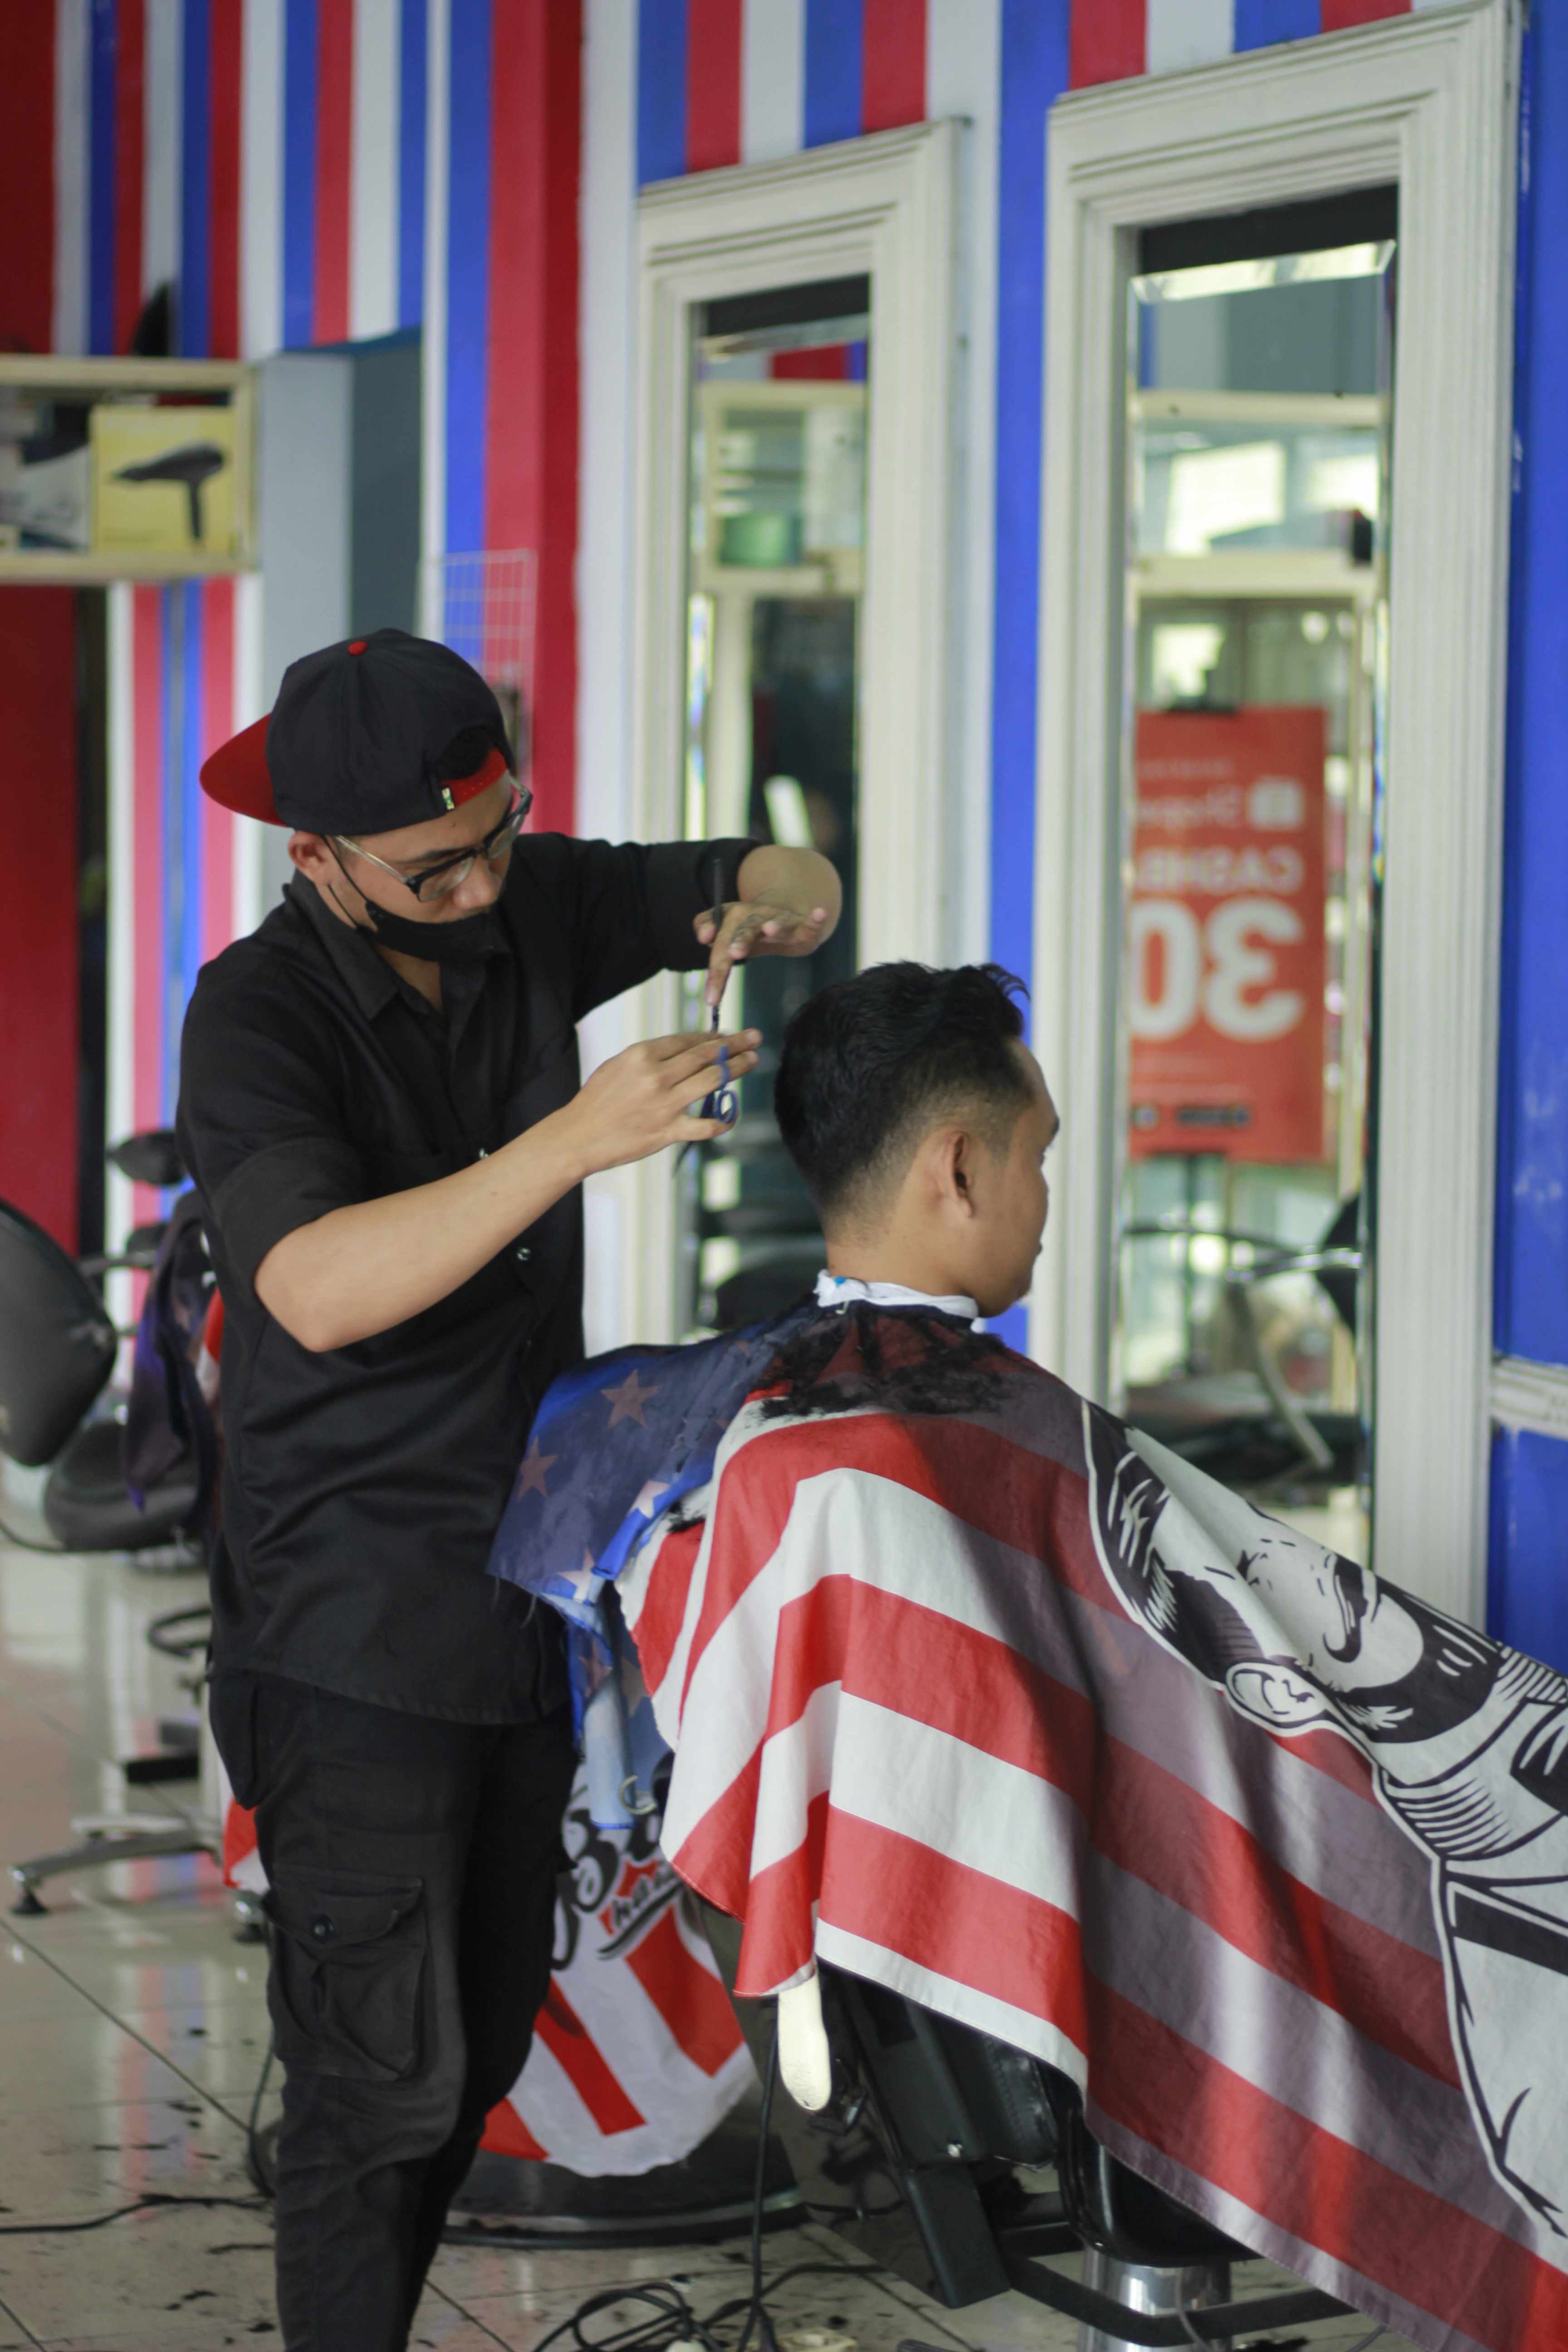 Harga Barbershop Di Kelurahan Rampal Celaket Profesional